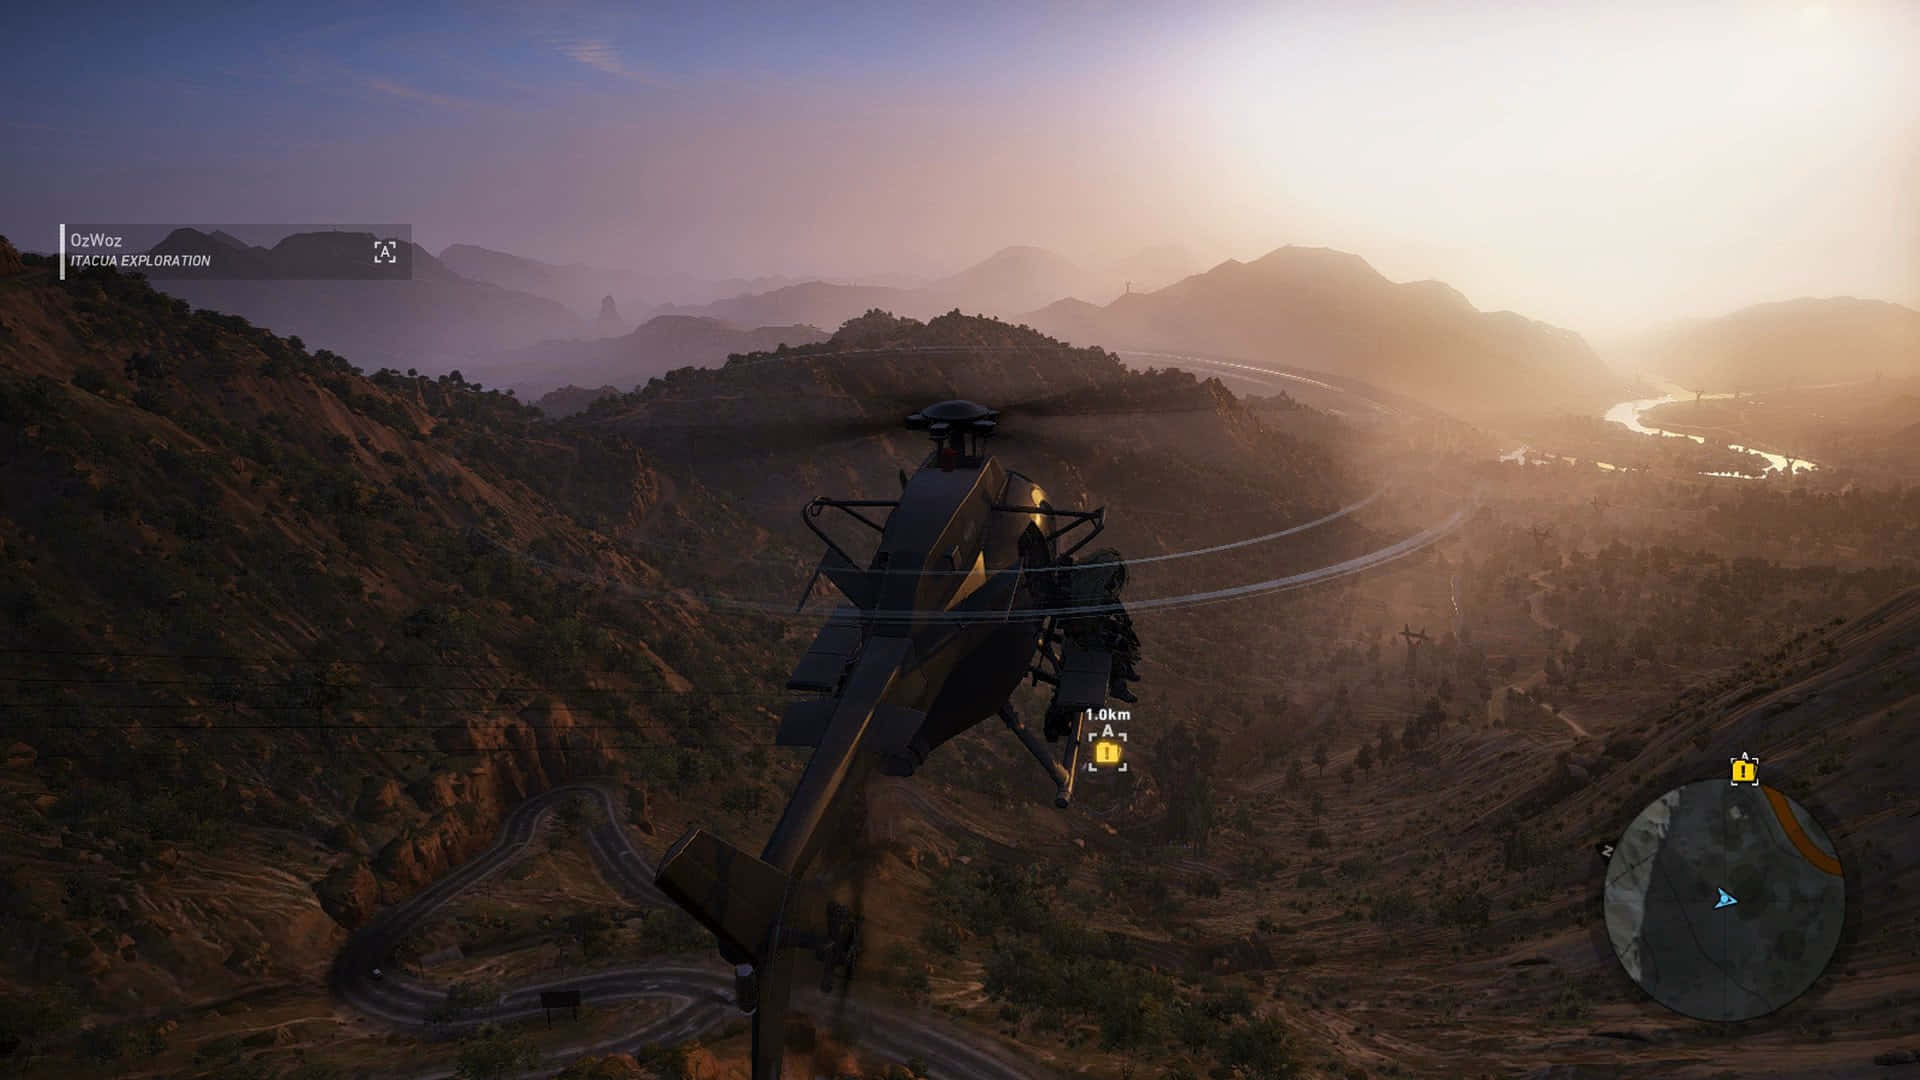 Hdbakgrundsbild För Ghost Recon Wildlands Med Helikopterspel.